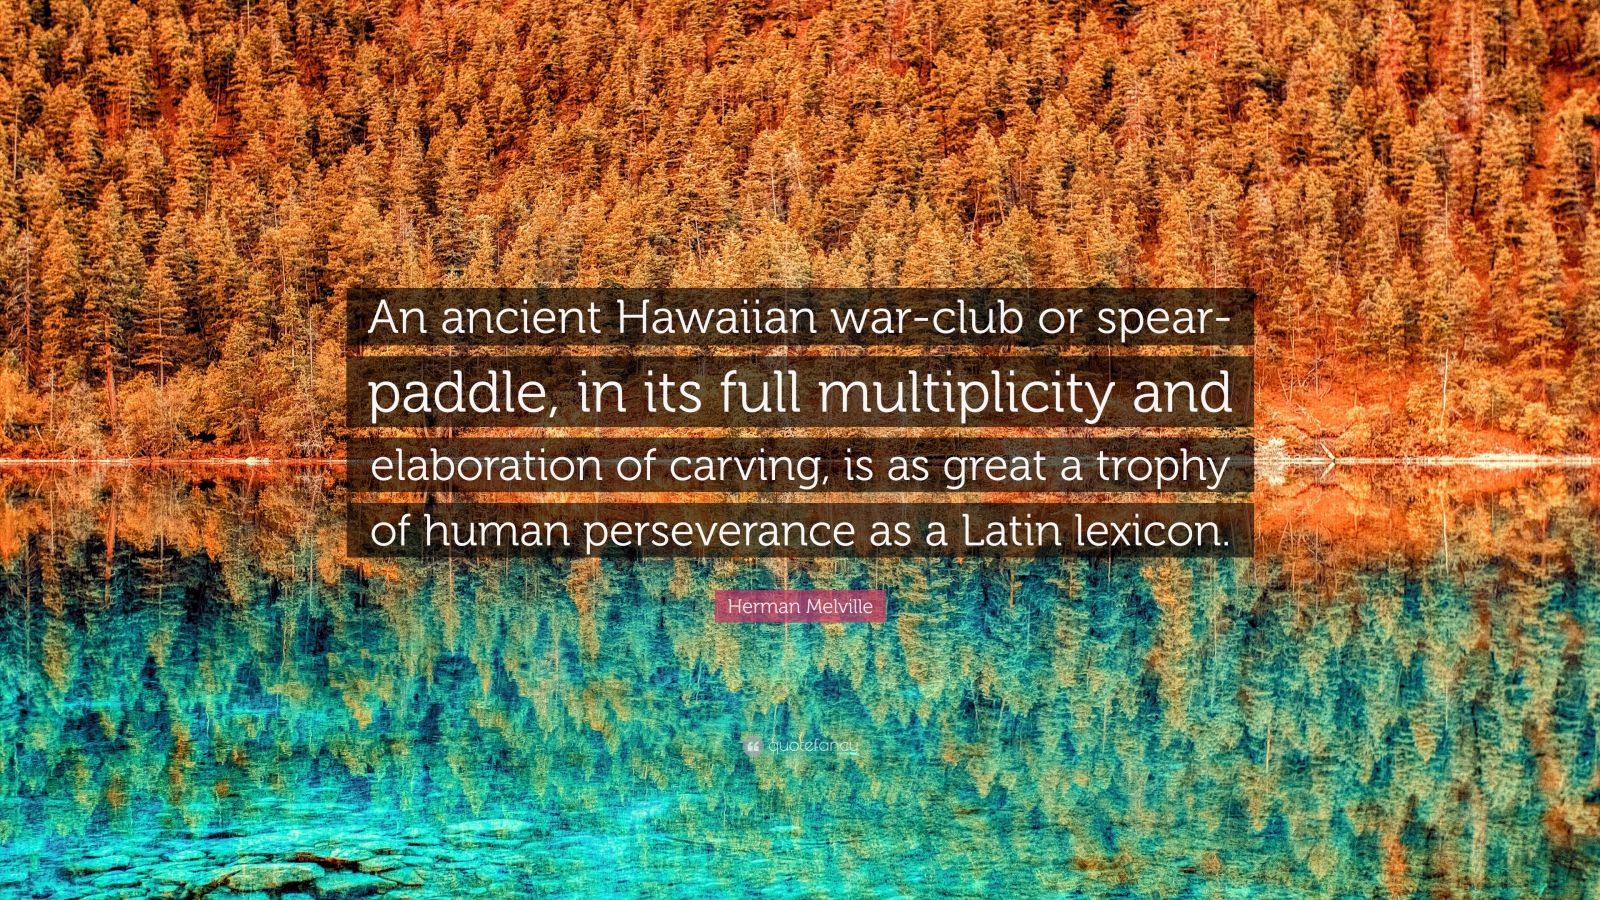 hawaiian warrior paddle